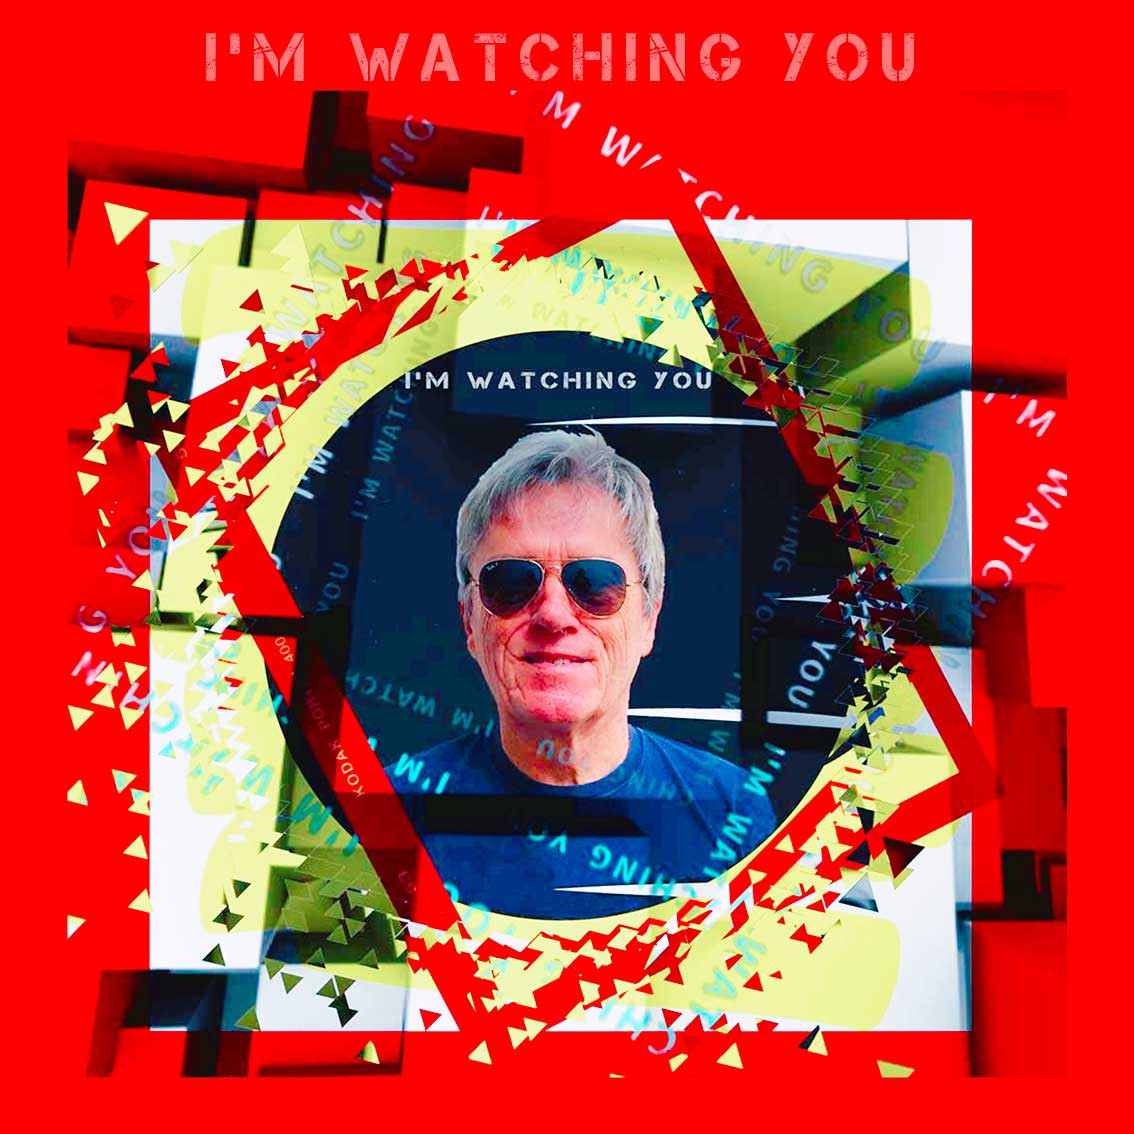 I’m Watching YOU